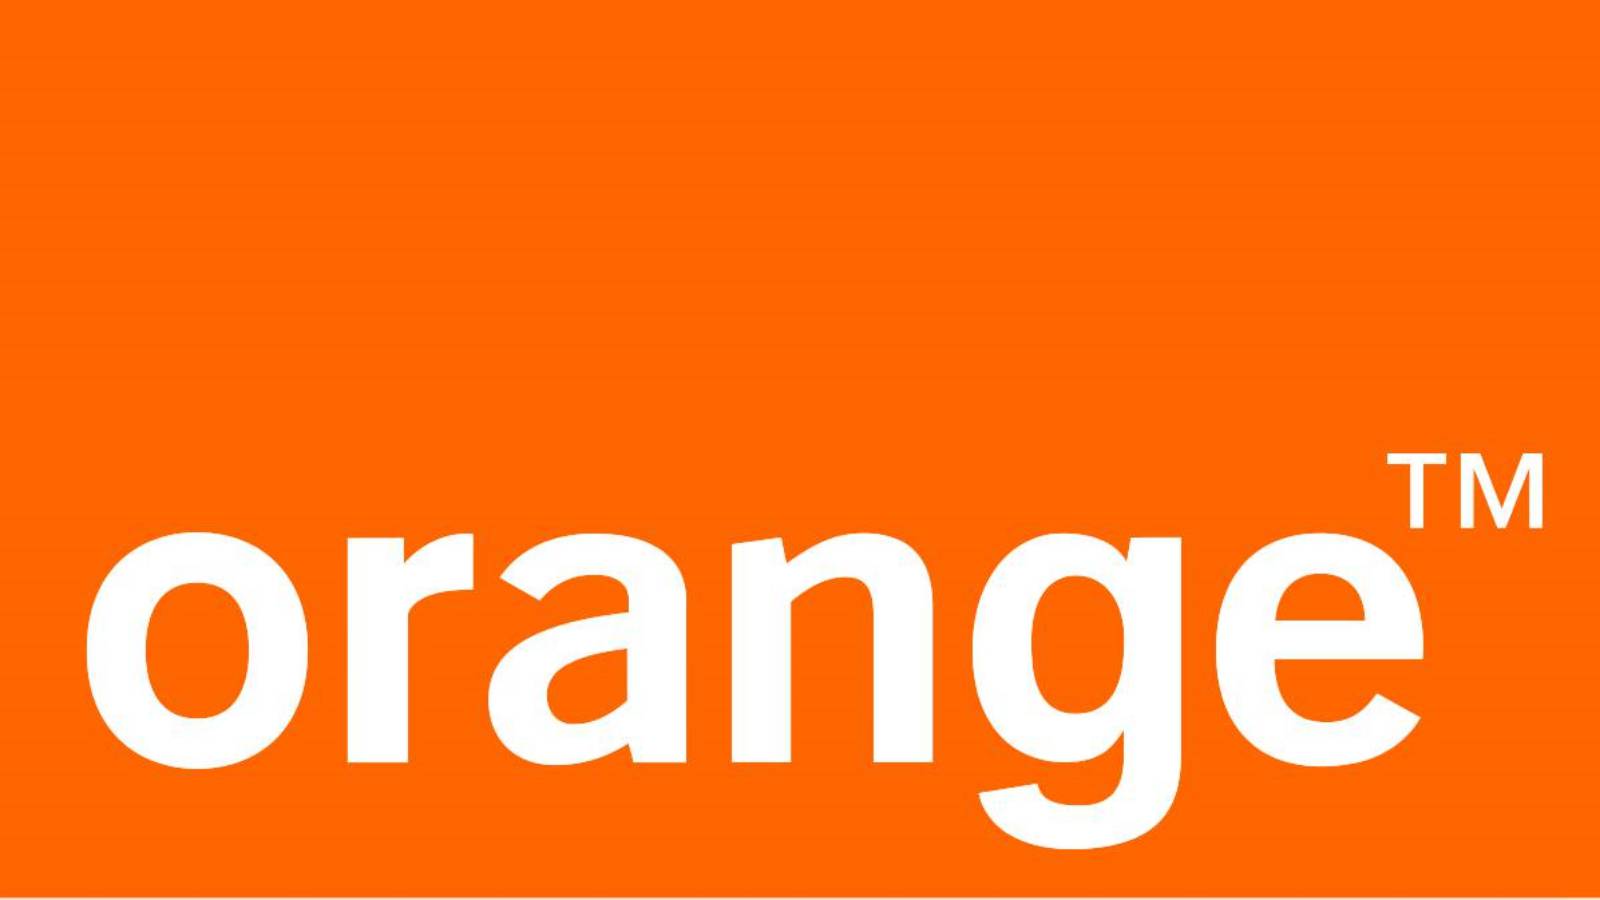 ATENTIONARE Orange ALERTEAZA Milioane Clienti Romani